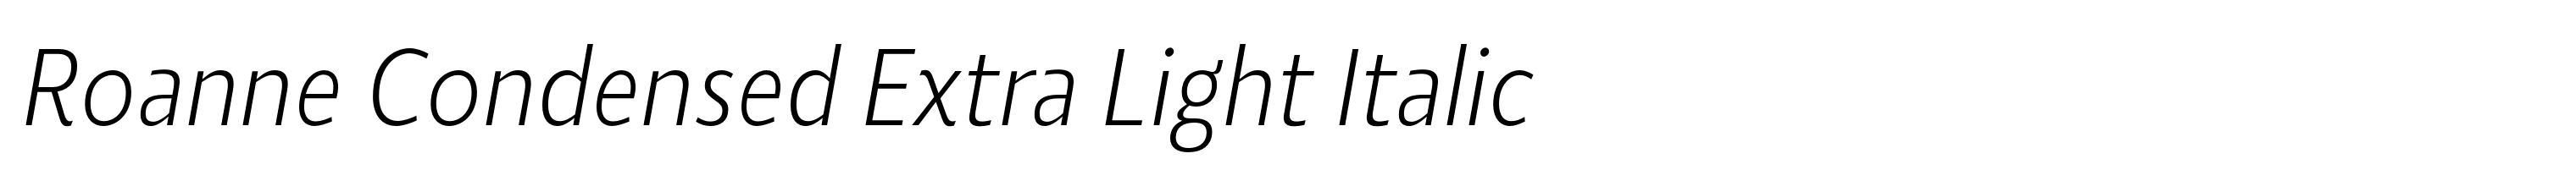 Roanne Condensed Extra Light Italic